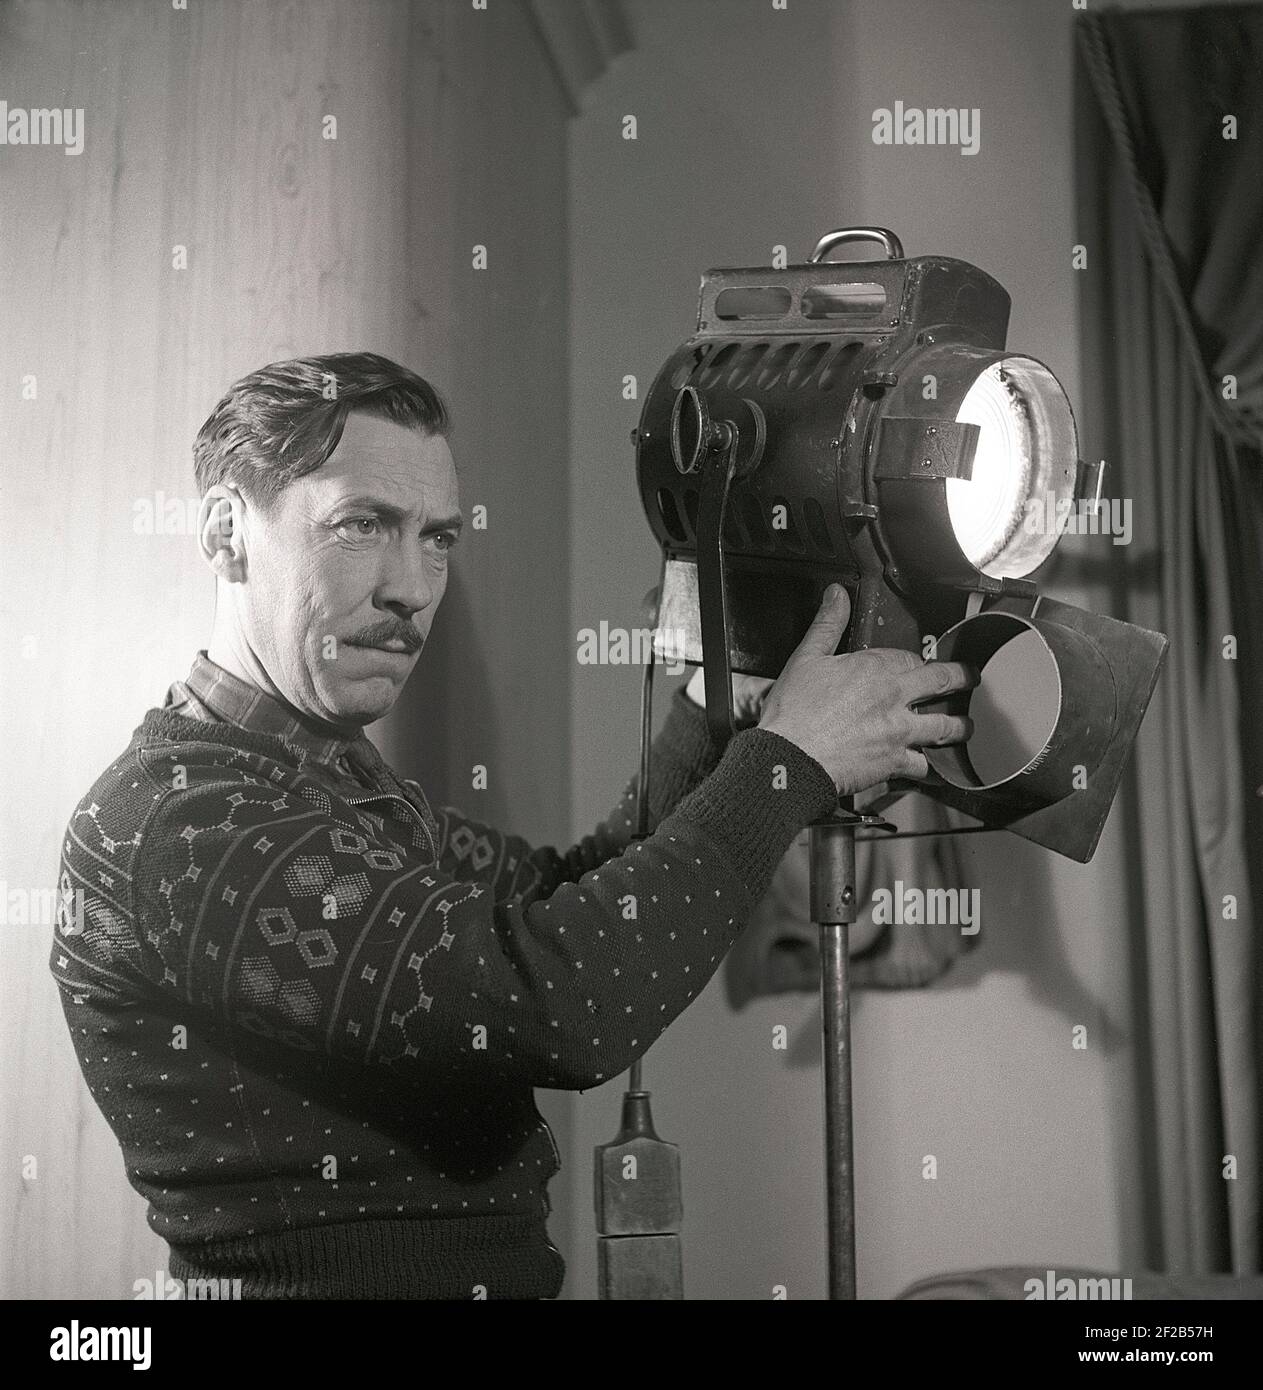 Studio cinematografico negli anni '40. Un uomo che lavora sul set cinematografico gestisce la lampada che viene utilizzata per illuminare la scena del film durante le riprese del film Sjätte budet. Svezia 1947. rif AA6-1 Foto Stock